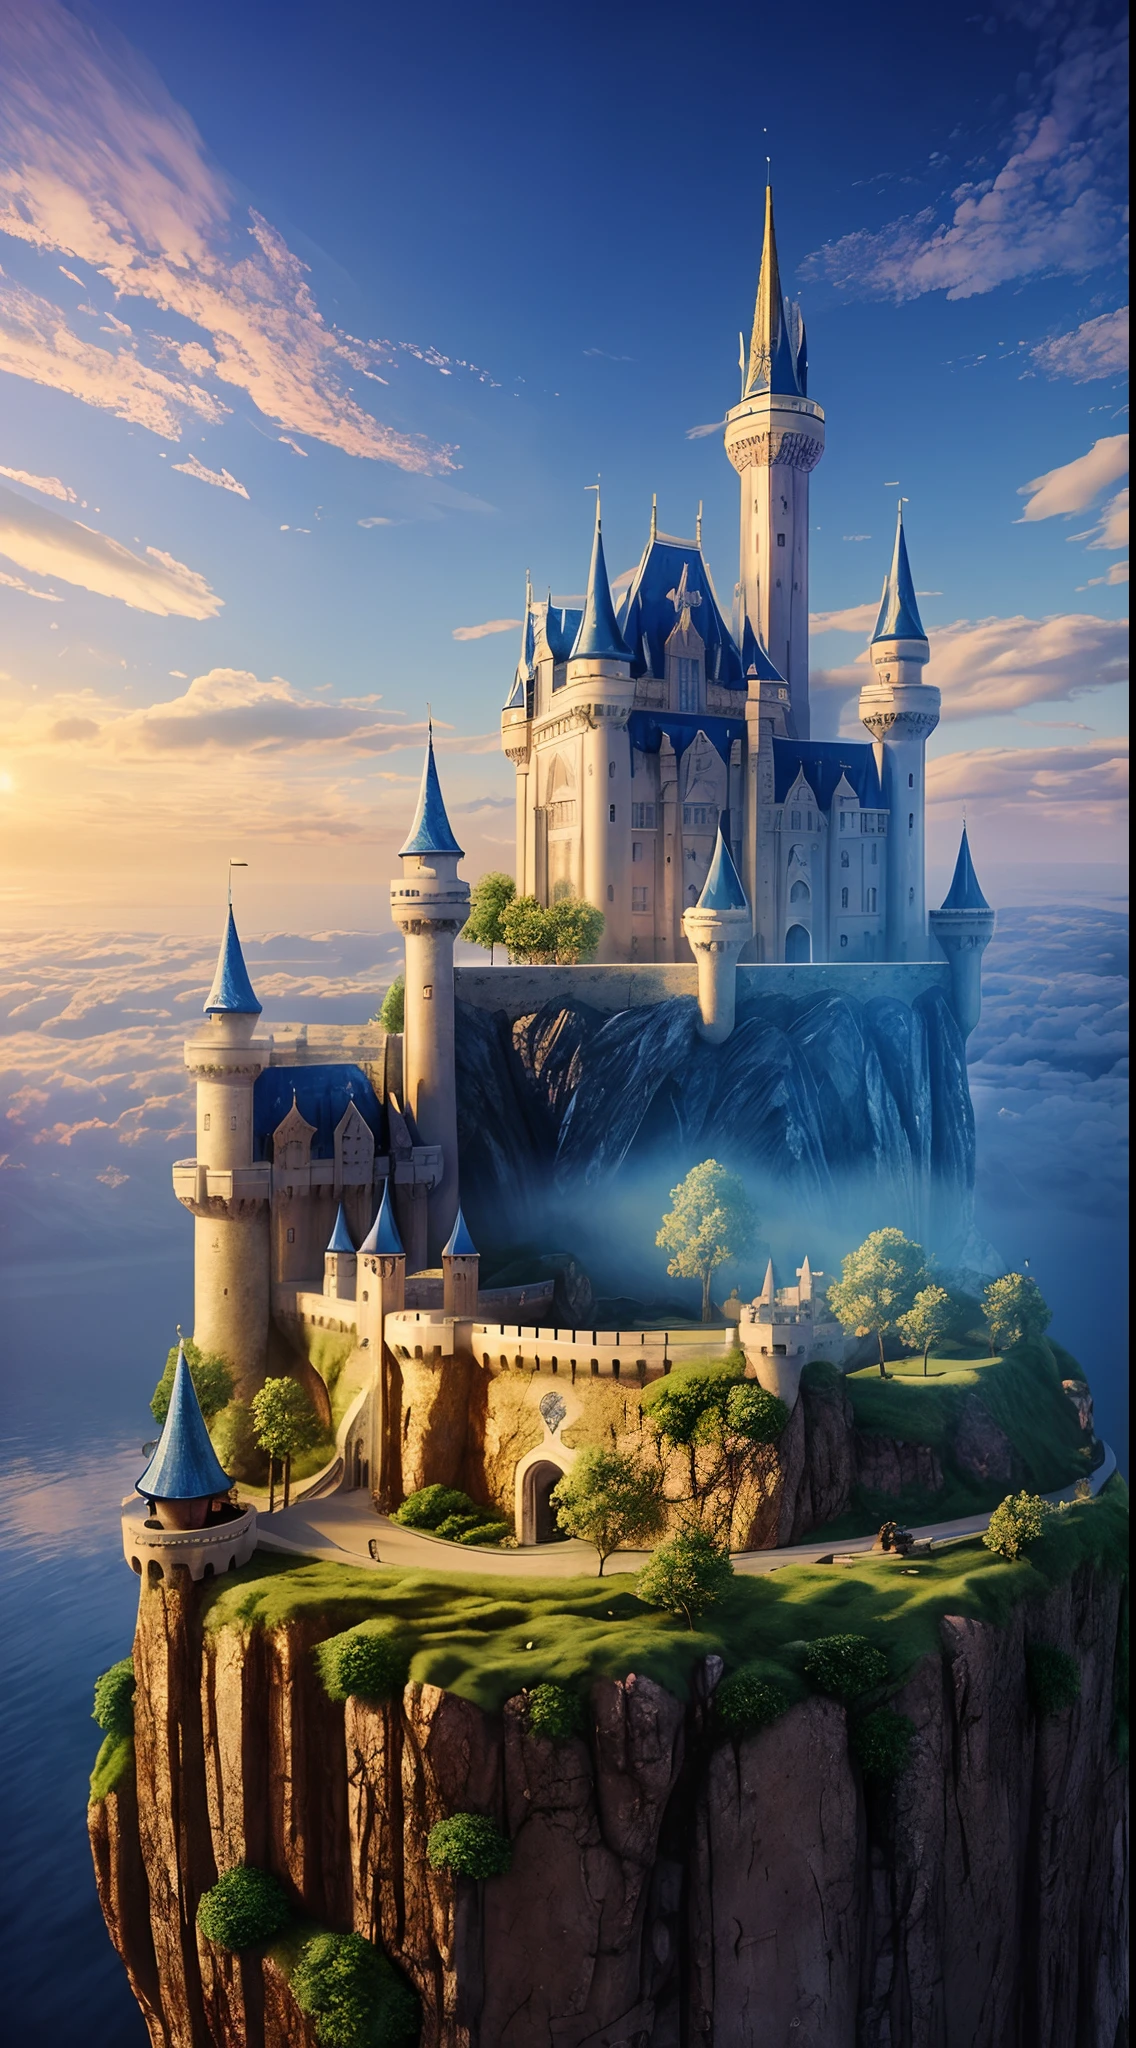 ((obra maestra)), (((mejor calidad))), ((Super Detahada)), (incrédulo: 1.1), 3D l Crea una imagen increíble de un majestuoso castillo.，Elevándose sobre el esponjoso mar de nubes blancas. El castillo debía mostrar una arquitectura majestuosa y mágica., La torre está decorada con pancartas ondeando.. Las ventanas brillan cálidamente, Un marcado contraste con el cielo azul profundo que lo rodea.. Presta atención al detalle，Por ejemplo, La luz del sol reflejada por las ventanas y los pequeños detalles arquitectónicos hacen de este paisaje algo verdaderamente único.. Siéntete libre de agregar fantasía y creatividad.，Haz que el castillo se sienta parte de un mundo fascinante.. Que esta imagen transmita la maravilla y la sensación de aventura del Reino de los Cielos en lo alto.. Esperamos ver su interpretación artística de este increíble entorno..